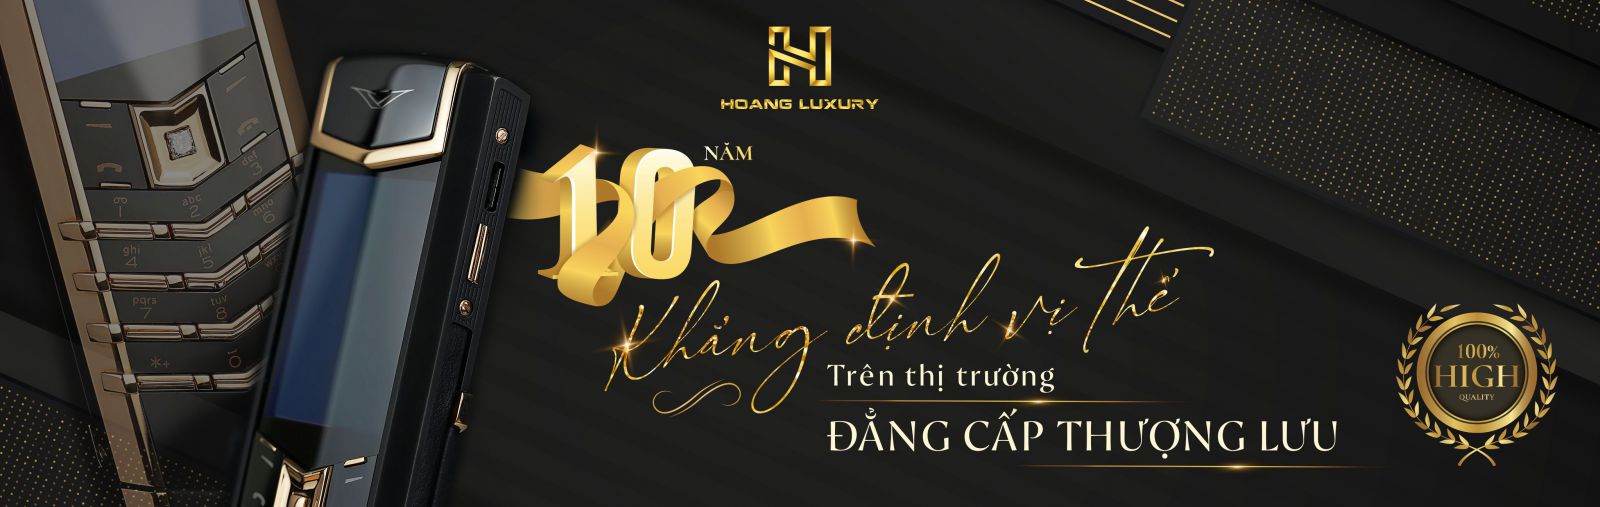 Hoàng Luxury - 10 năm khẳng định vị thế trên thị trường Đẳng cấp thượng lưu